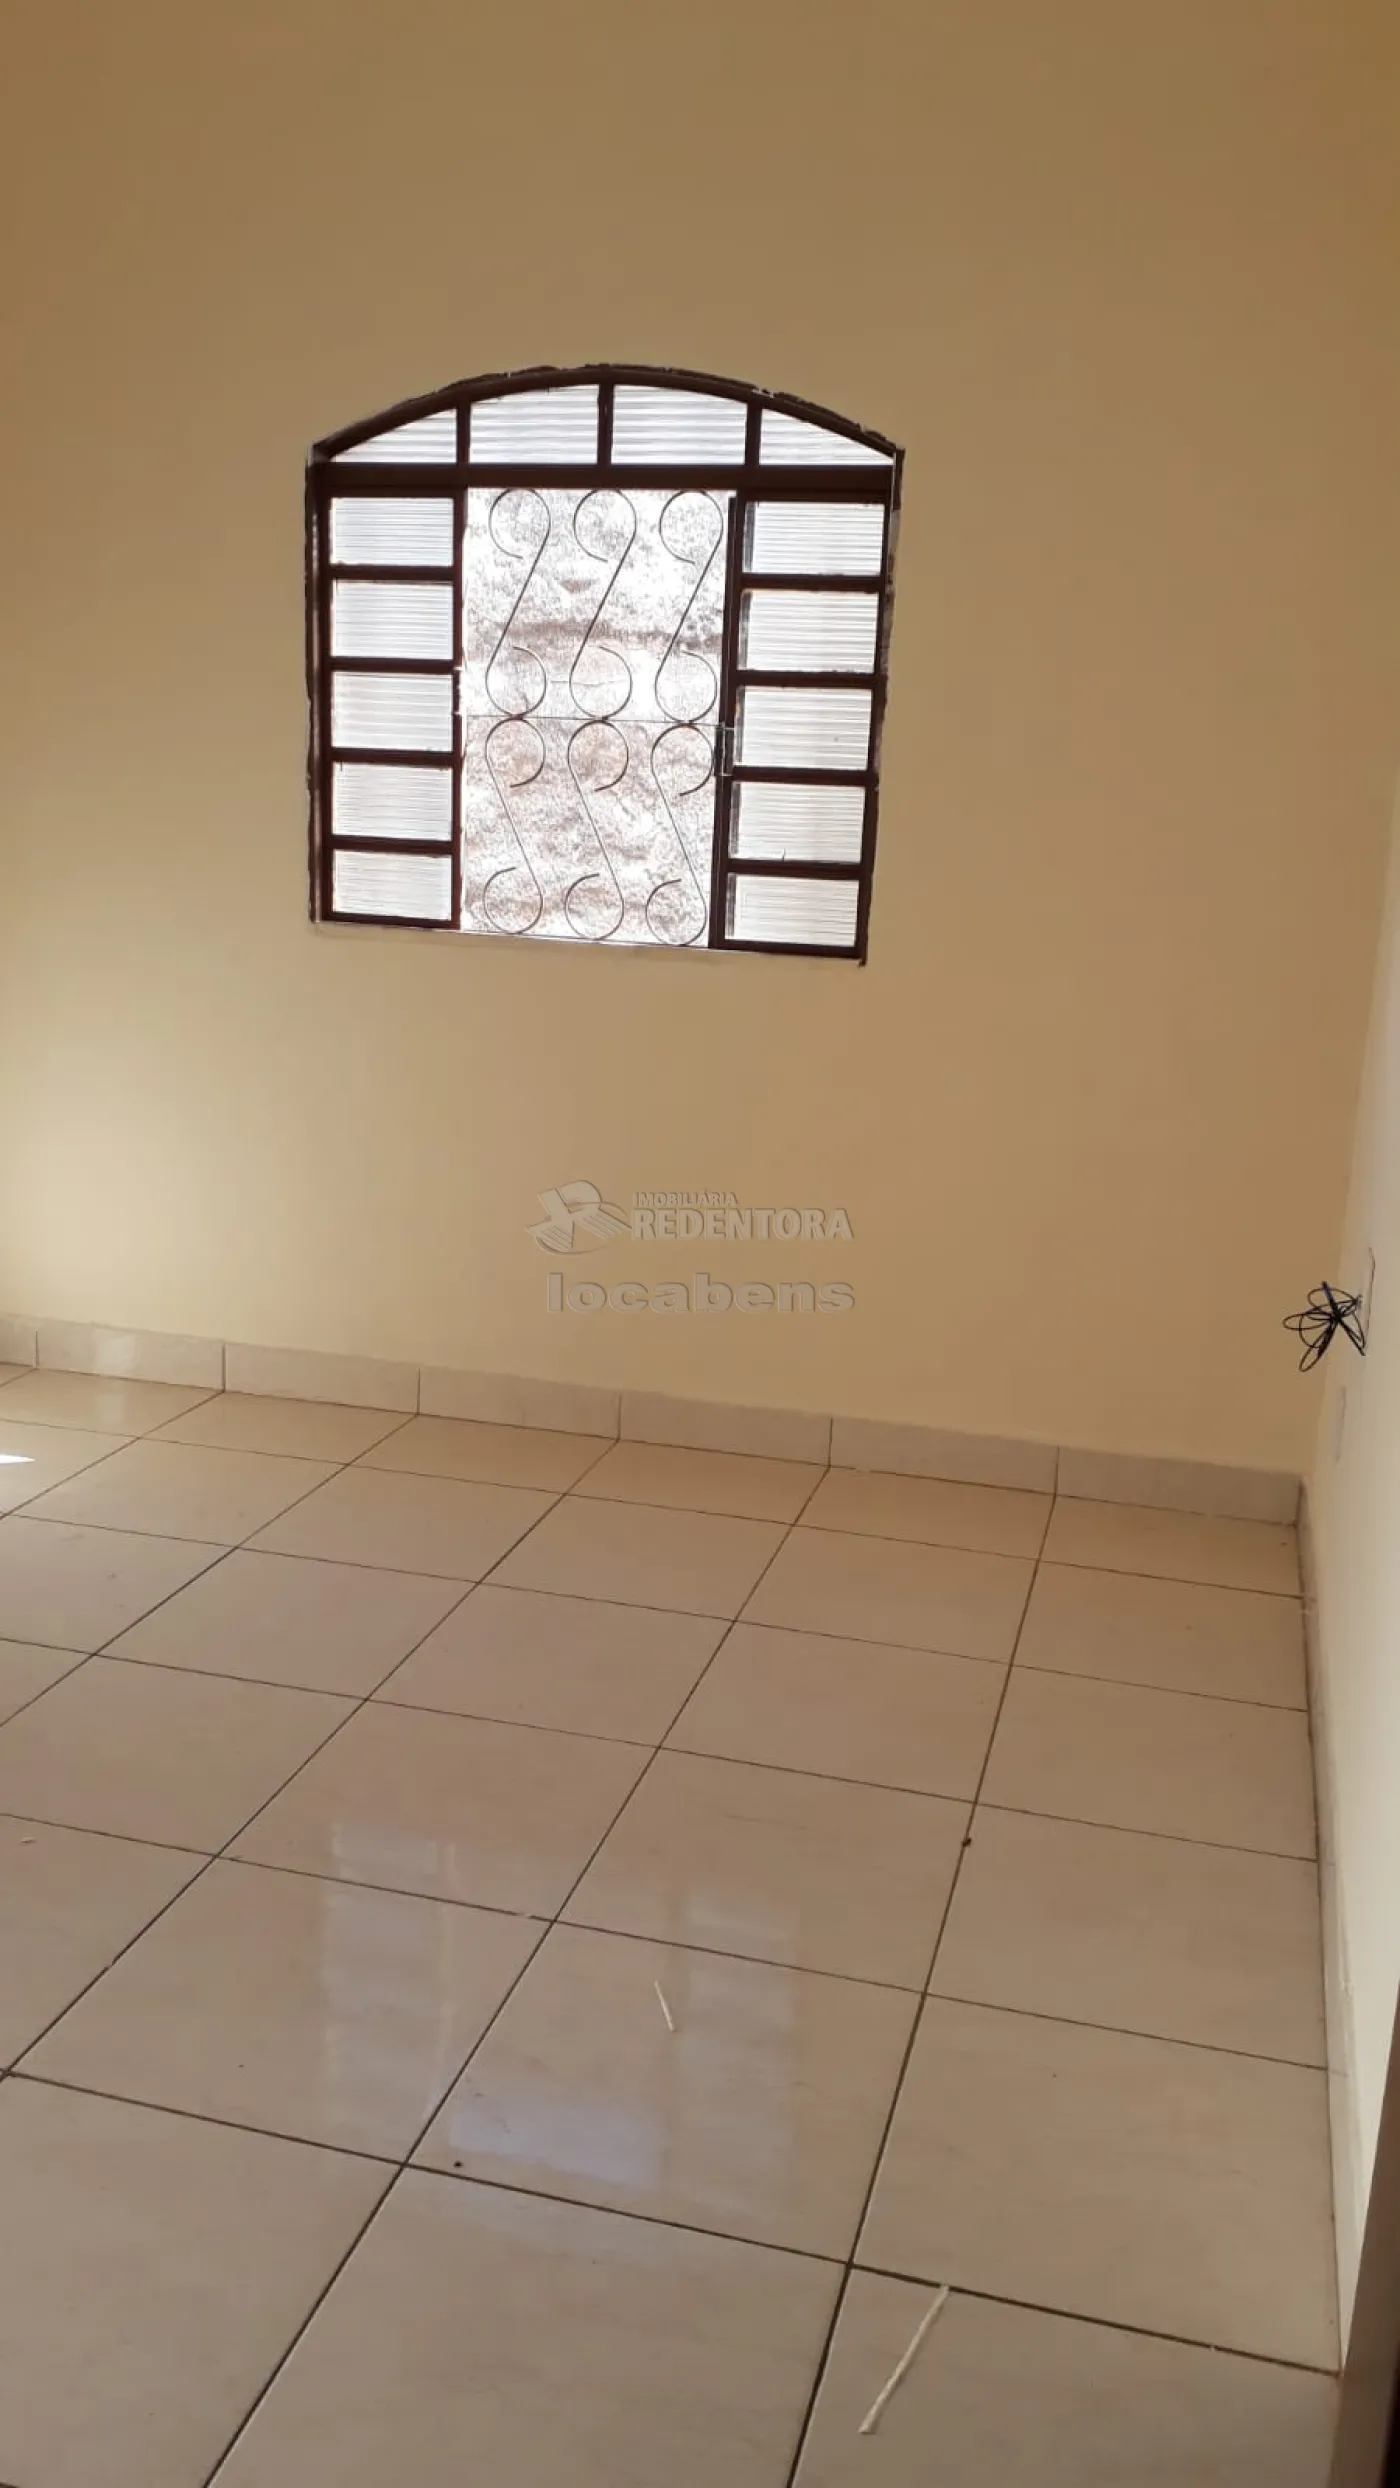 Alugar Casa / Padrão em São José do Rio Preto R$ 800,00 - Foto 13